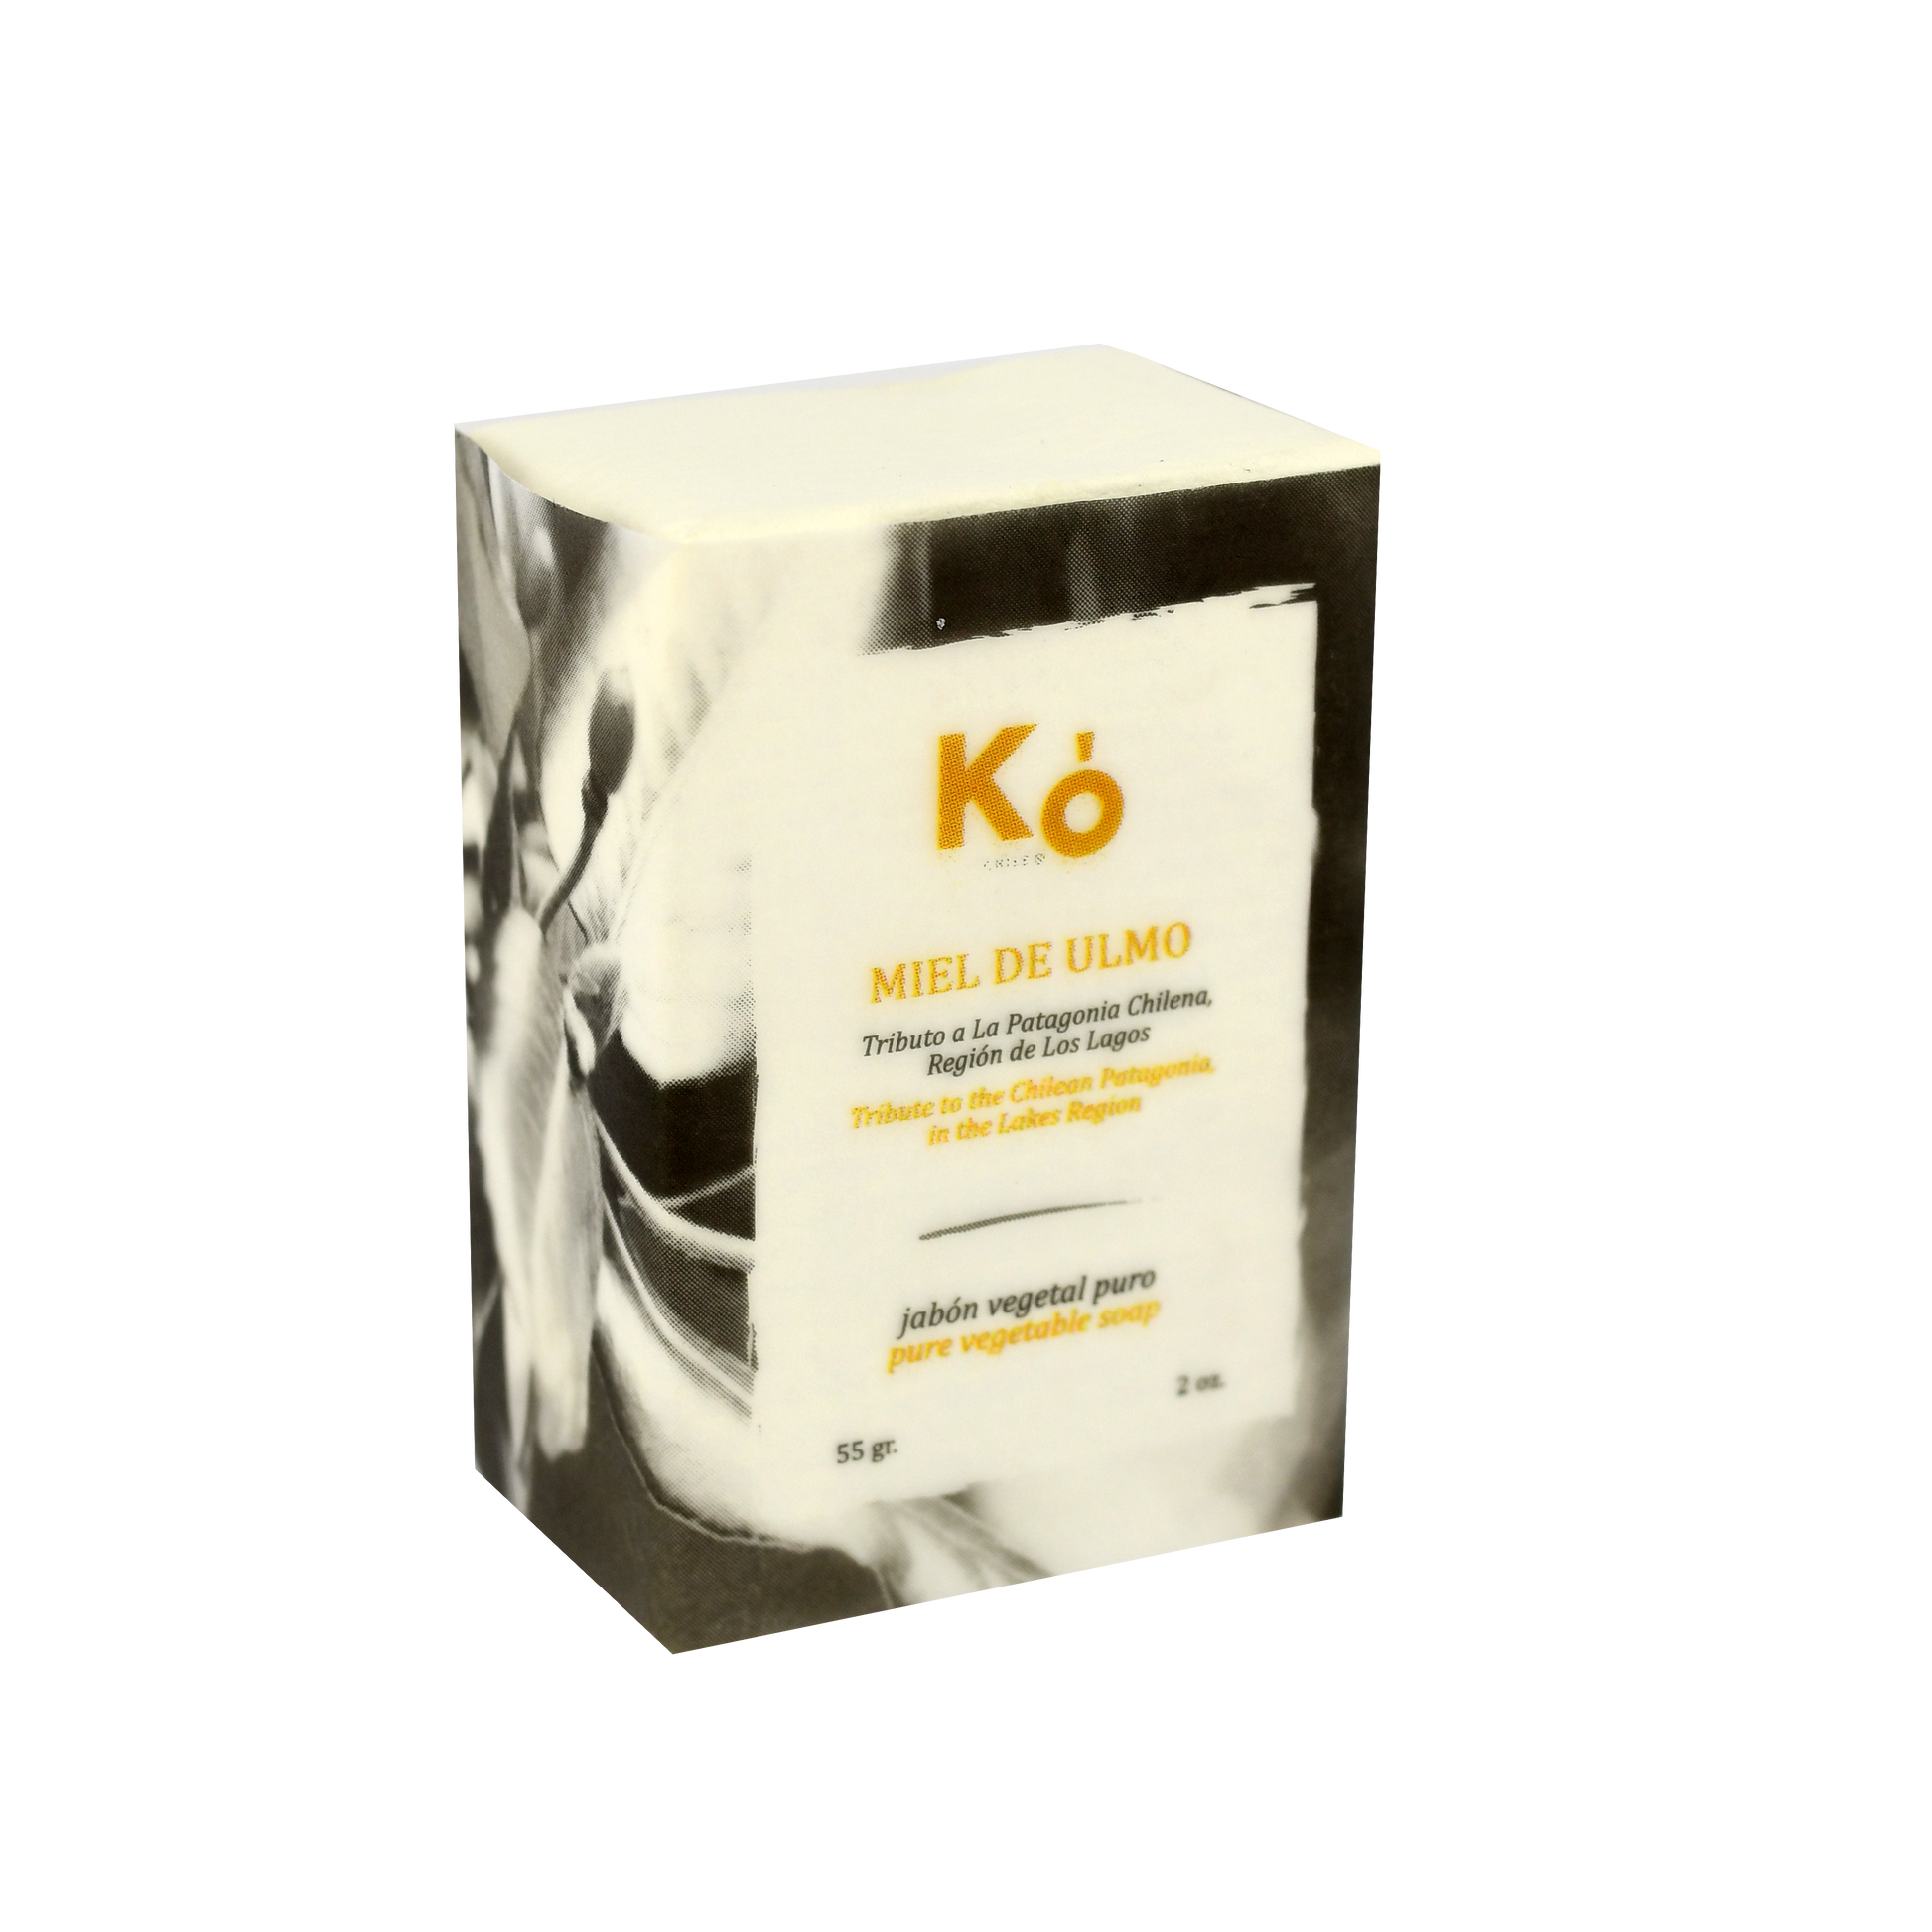 Jabon artesanal Ko, hecho a base de aceite de oliva y coco, que hidratan y eliminan el efecto de manos partidas. Enriquecido con aceites esenciales de ylang ylang, mejorana, salvia, lemongrass y miel de ulmo del sur de Chile. Tiene un efecto de aromaterapia relajante, revitalizante, y la miel actúa como antibacterial.  ¡Disfruta de un Spa en casa!  Los productos Ko son hechos con ingredientes naturales.